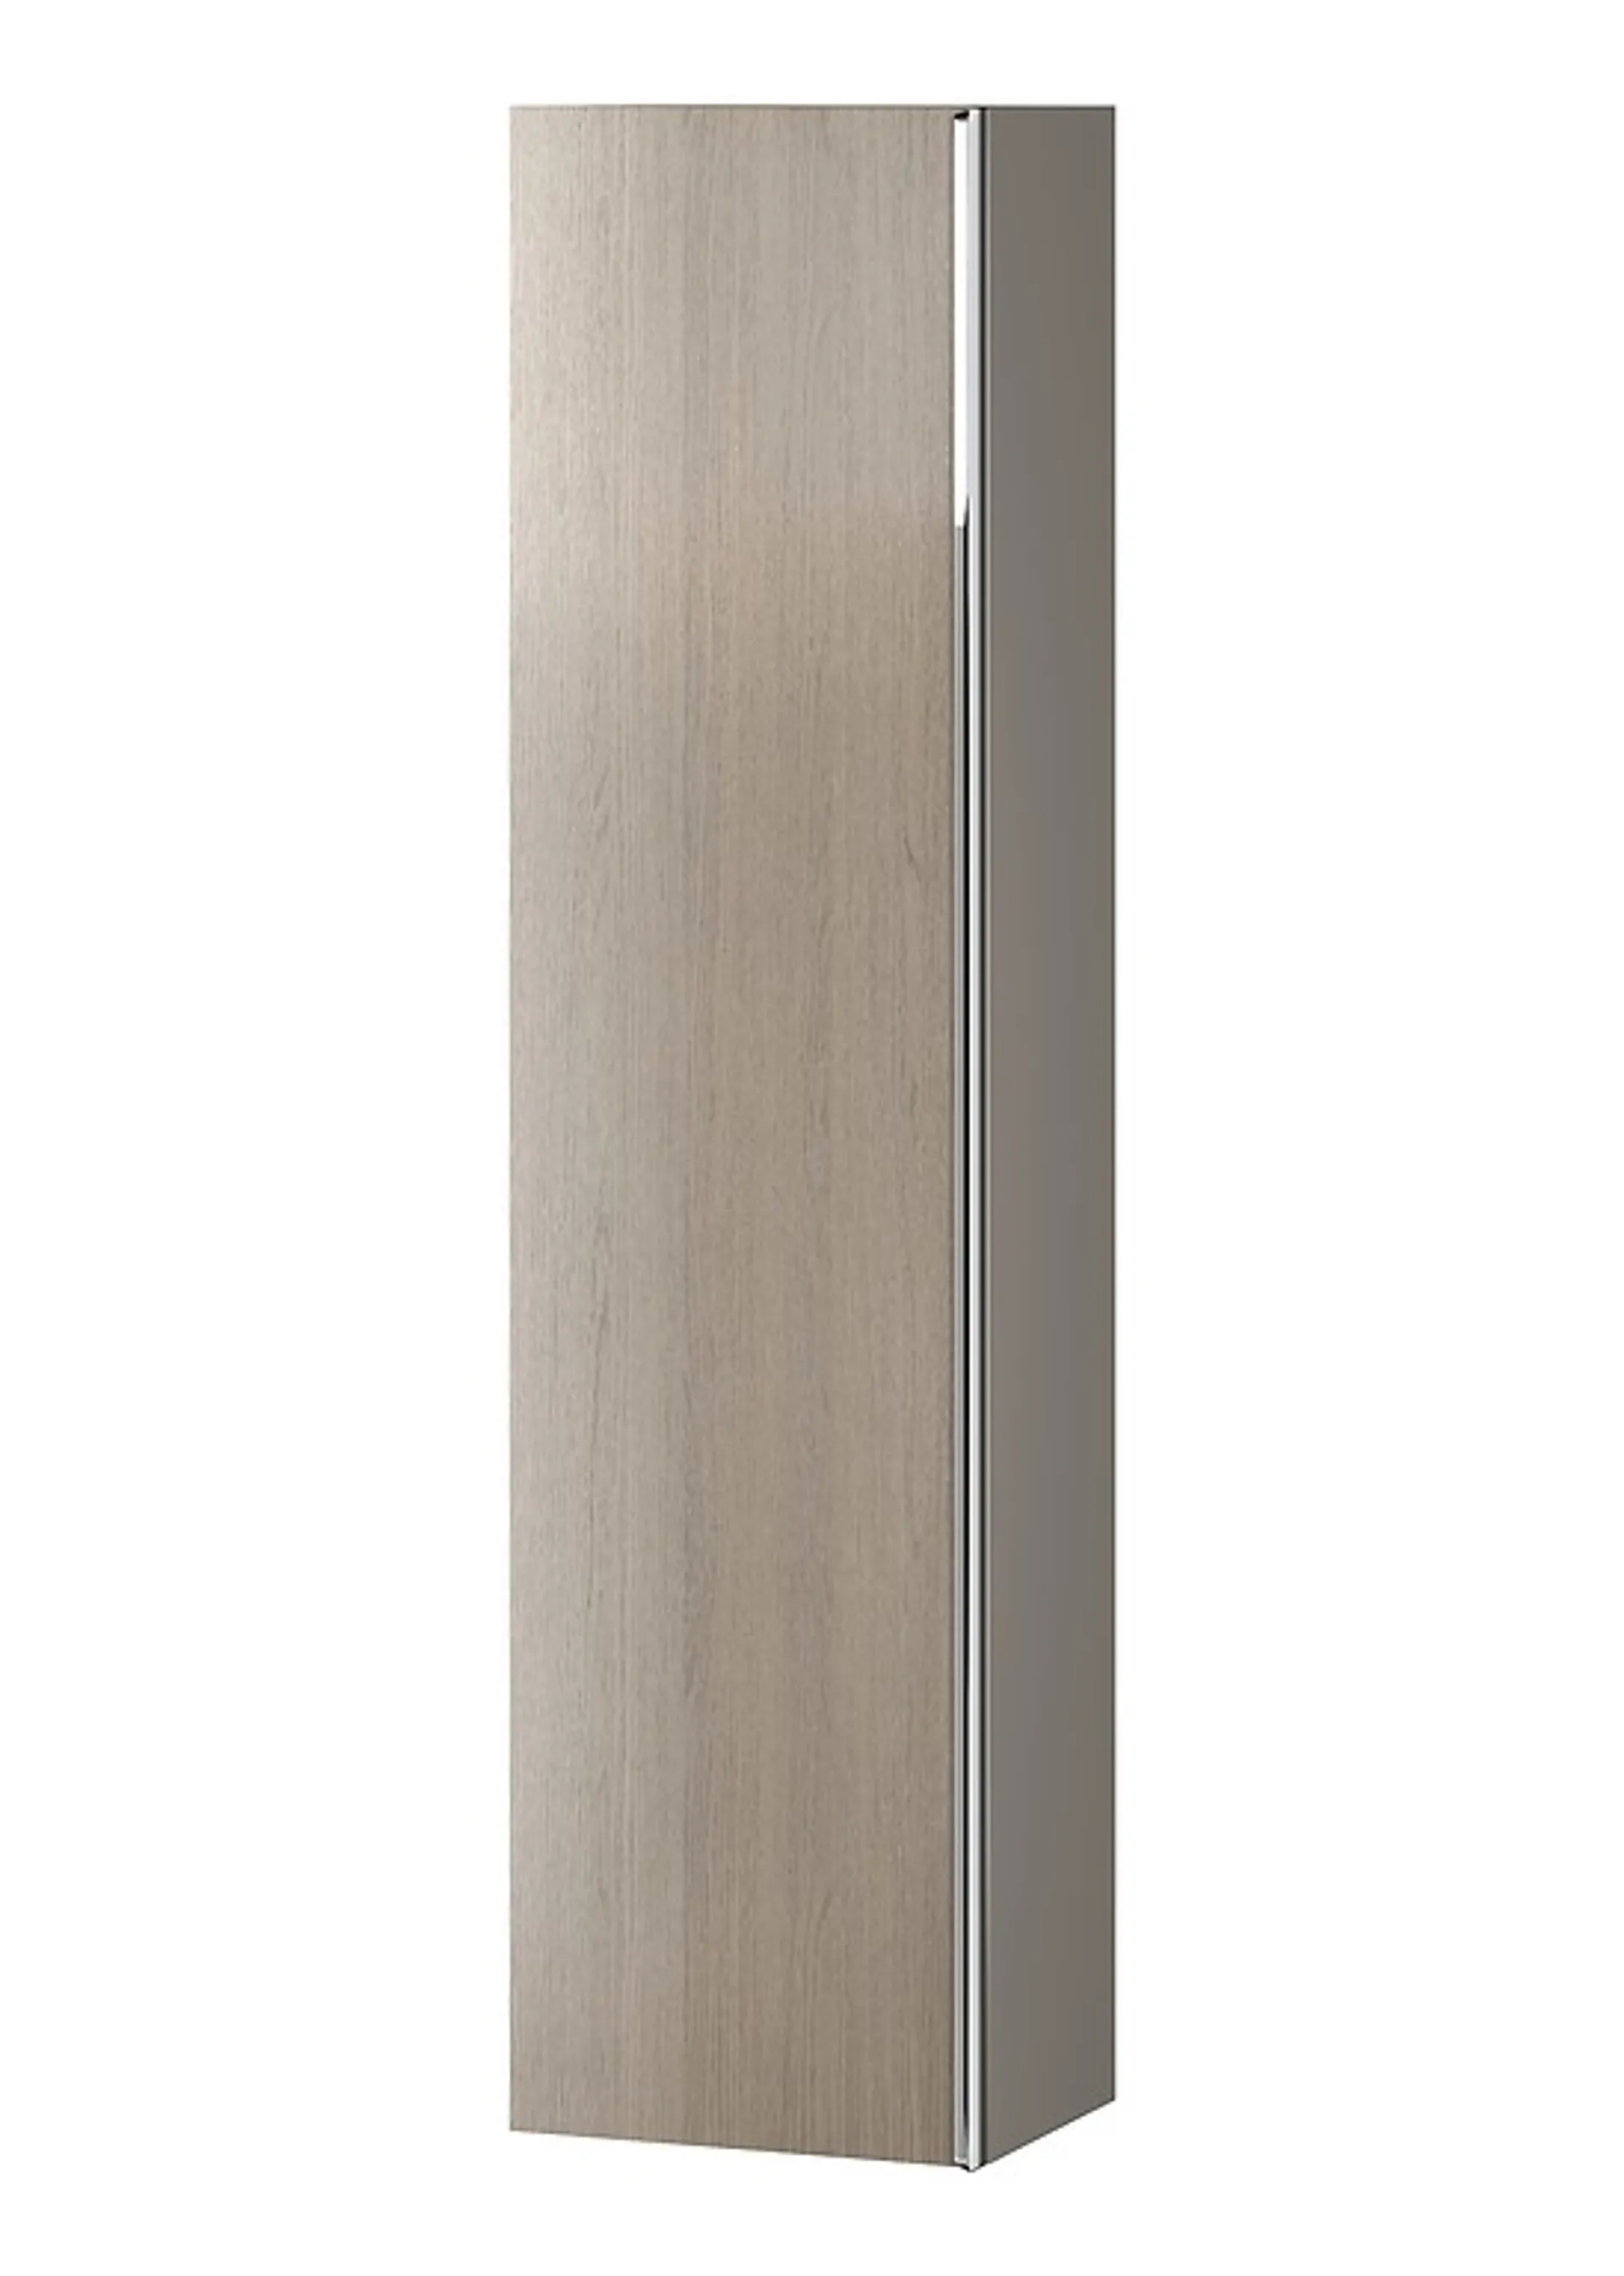 Słupek łazienkowy Cersanit Virgo 40x160x30 cm jasne drewno S522-034